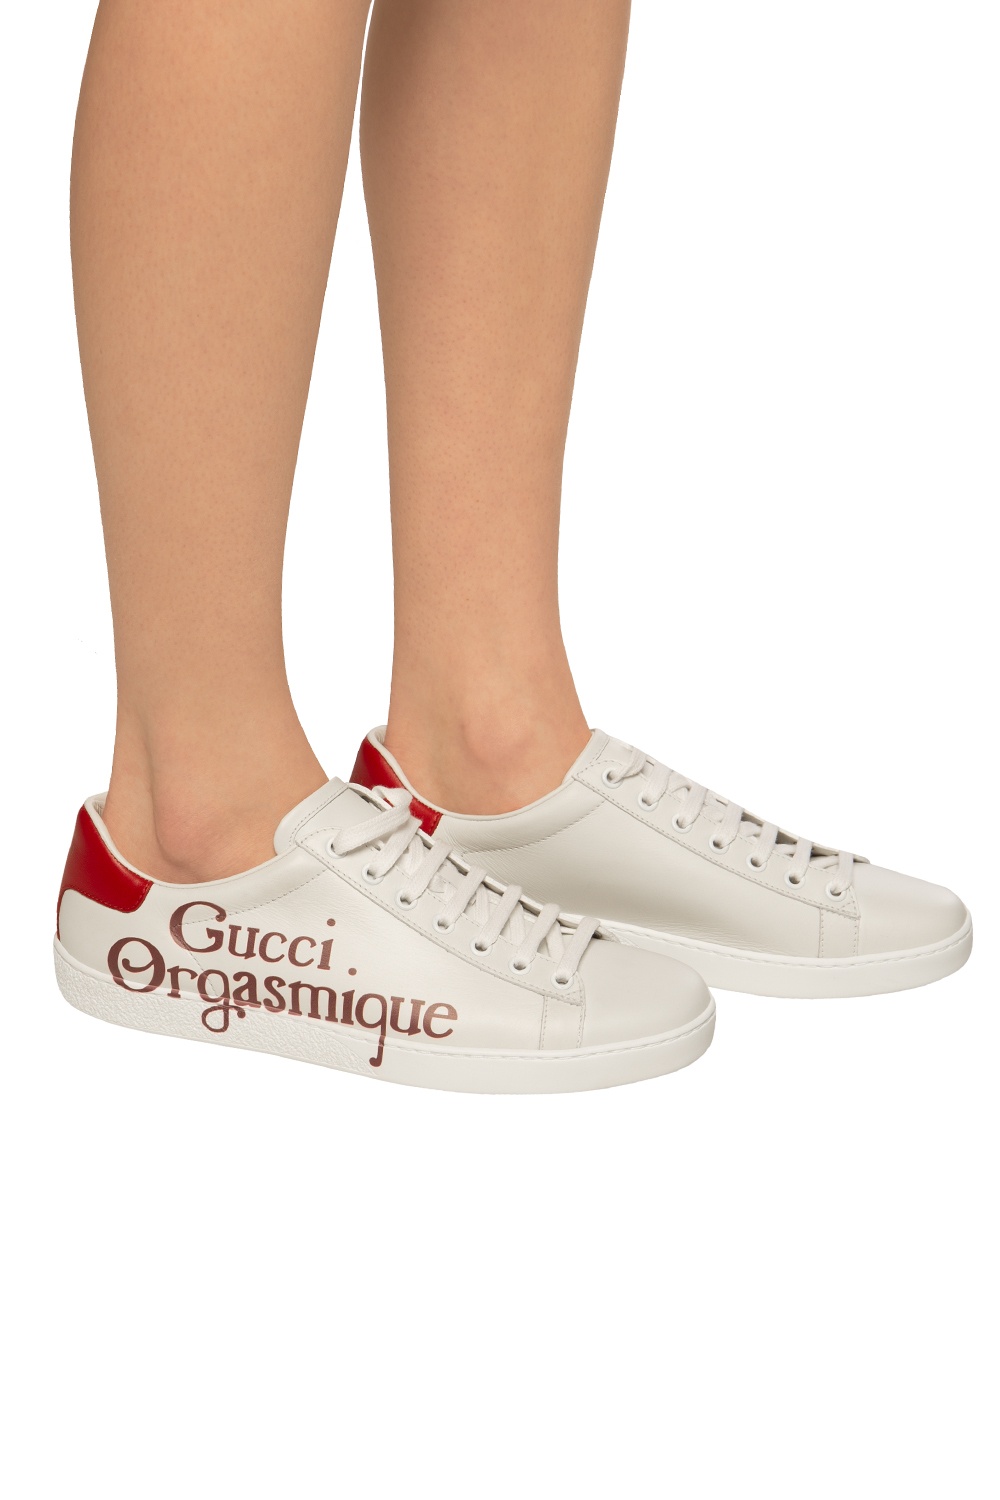 Gucci 'Orgasmique' collection | Women's Shoes | Vitkac